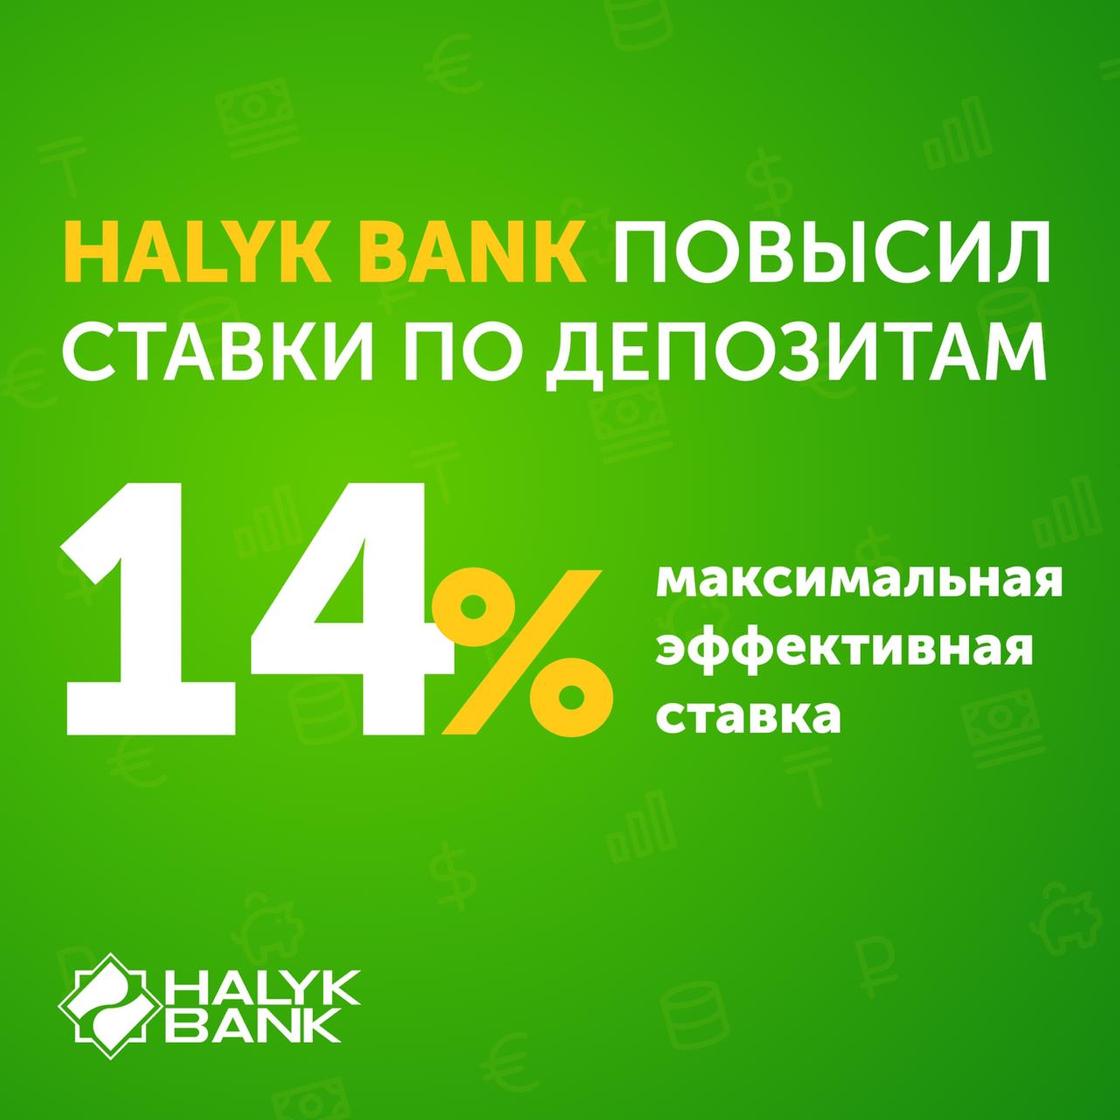 Halyk Bank поднял ставки по депозитам